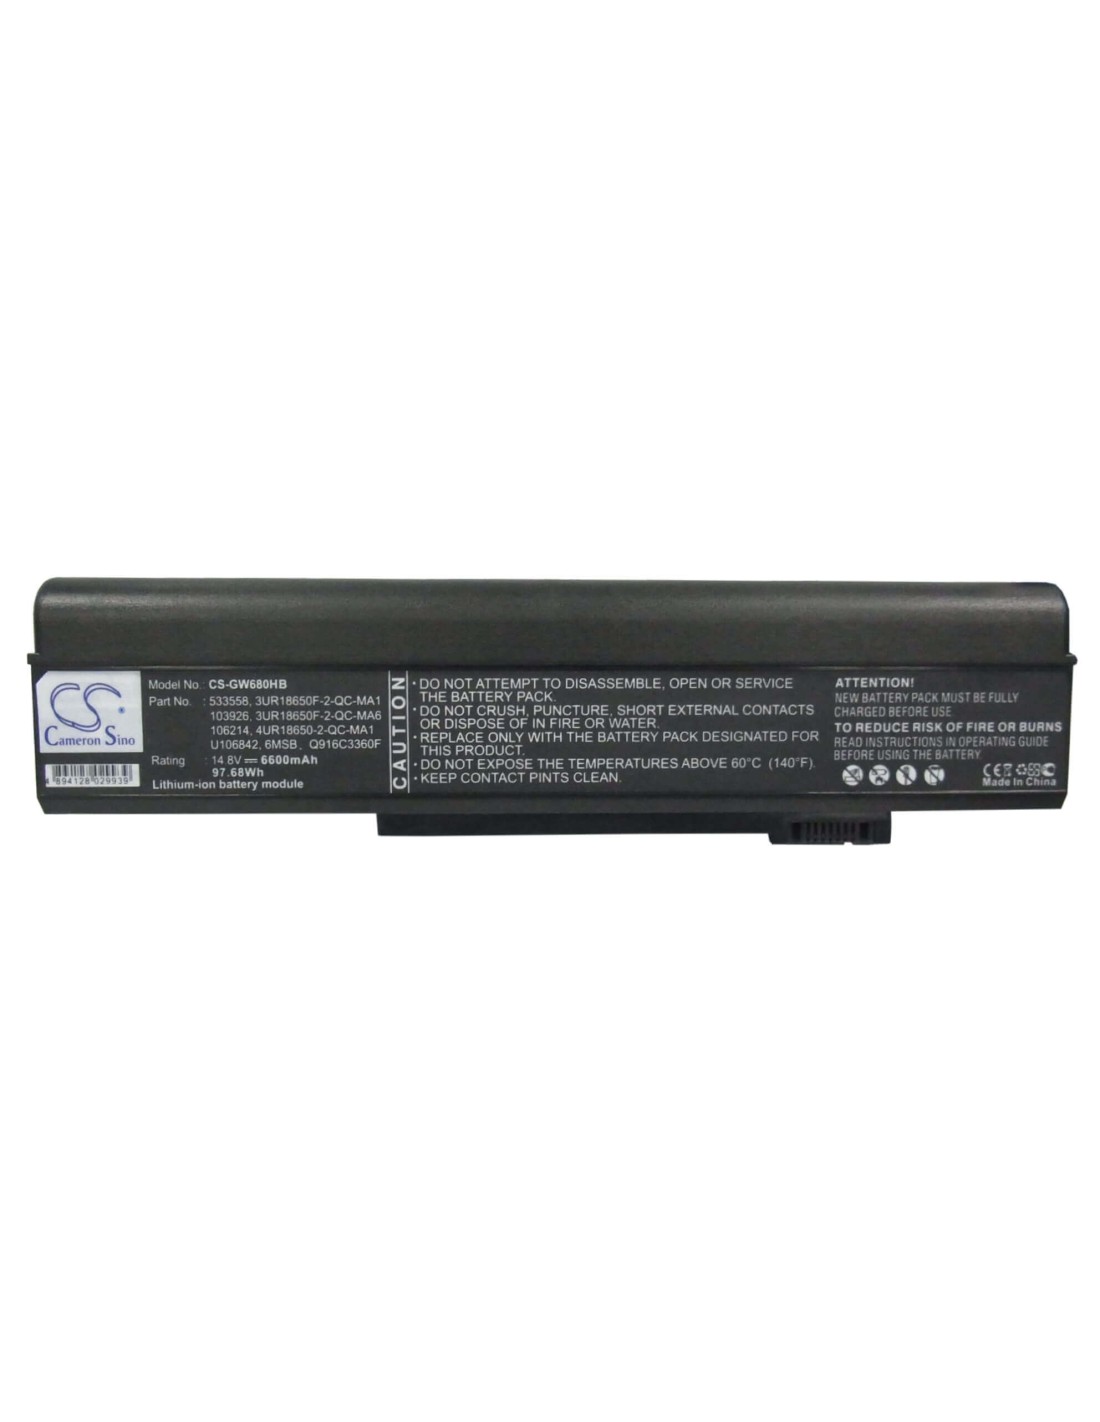 Black Battery for Gateway M360, M460, M680 14.8V, 6600mAh - 97.68Wh